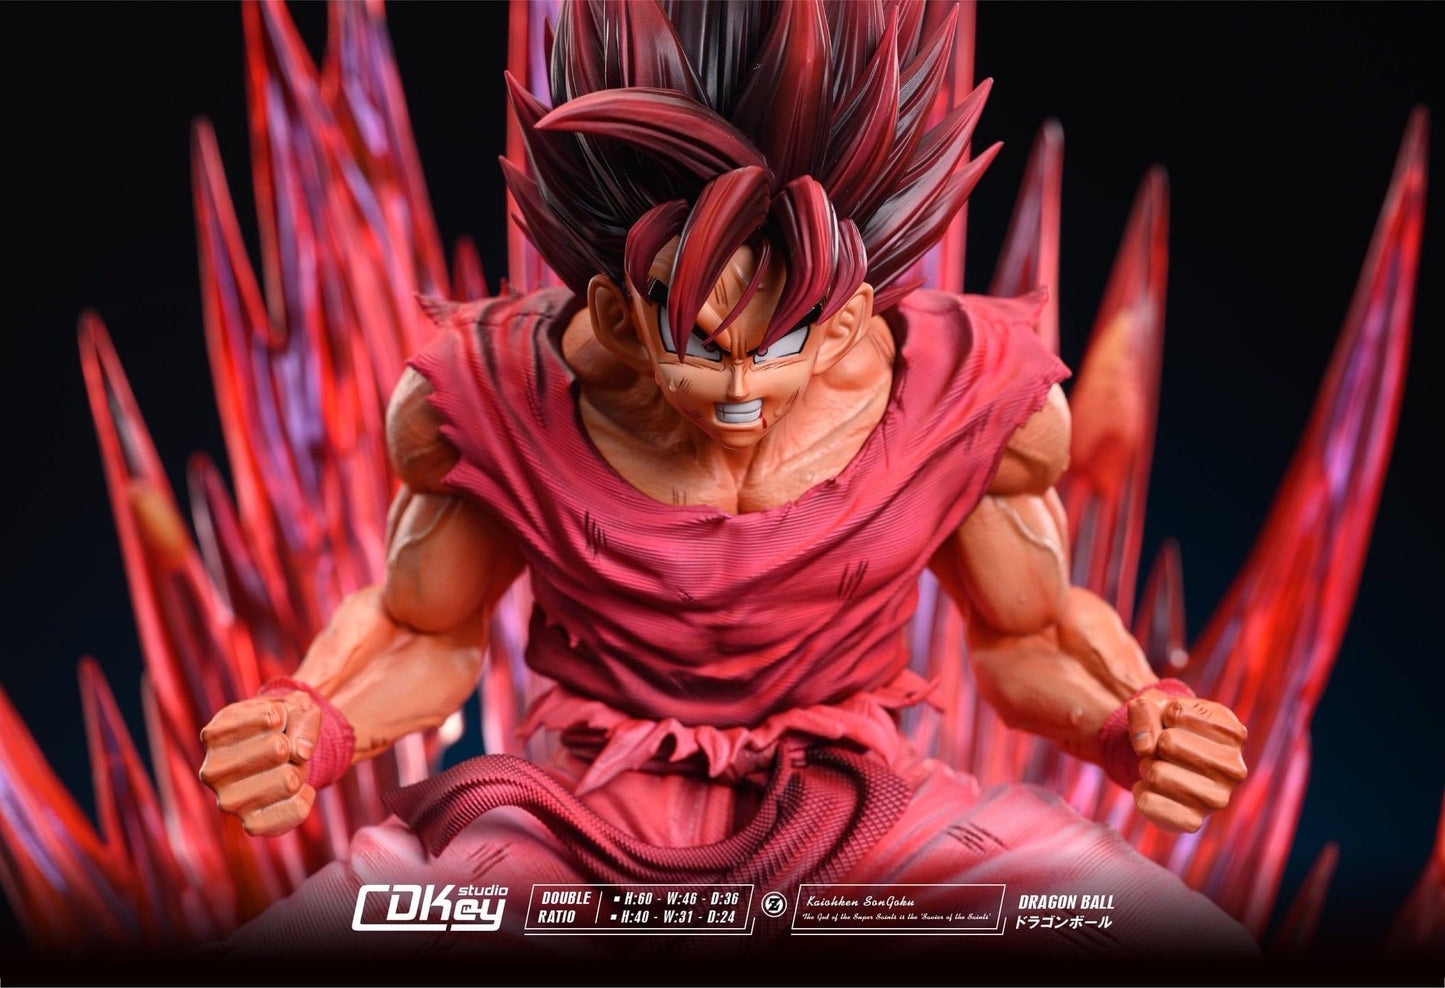 CDKey - Goku